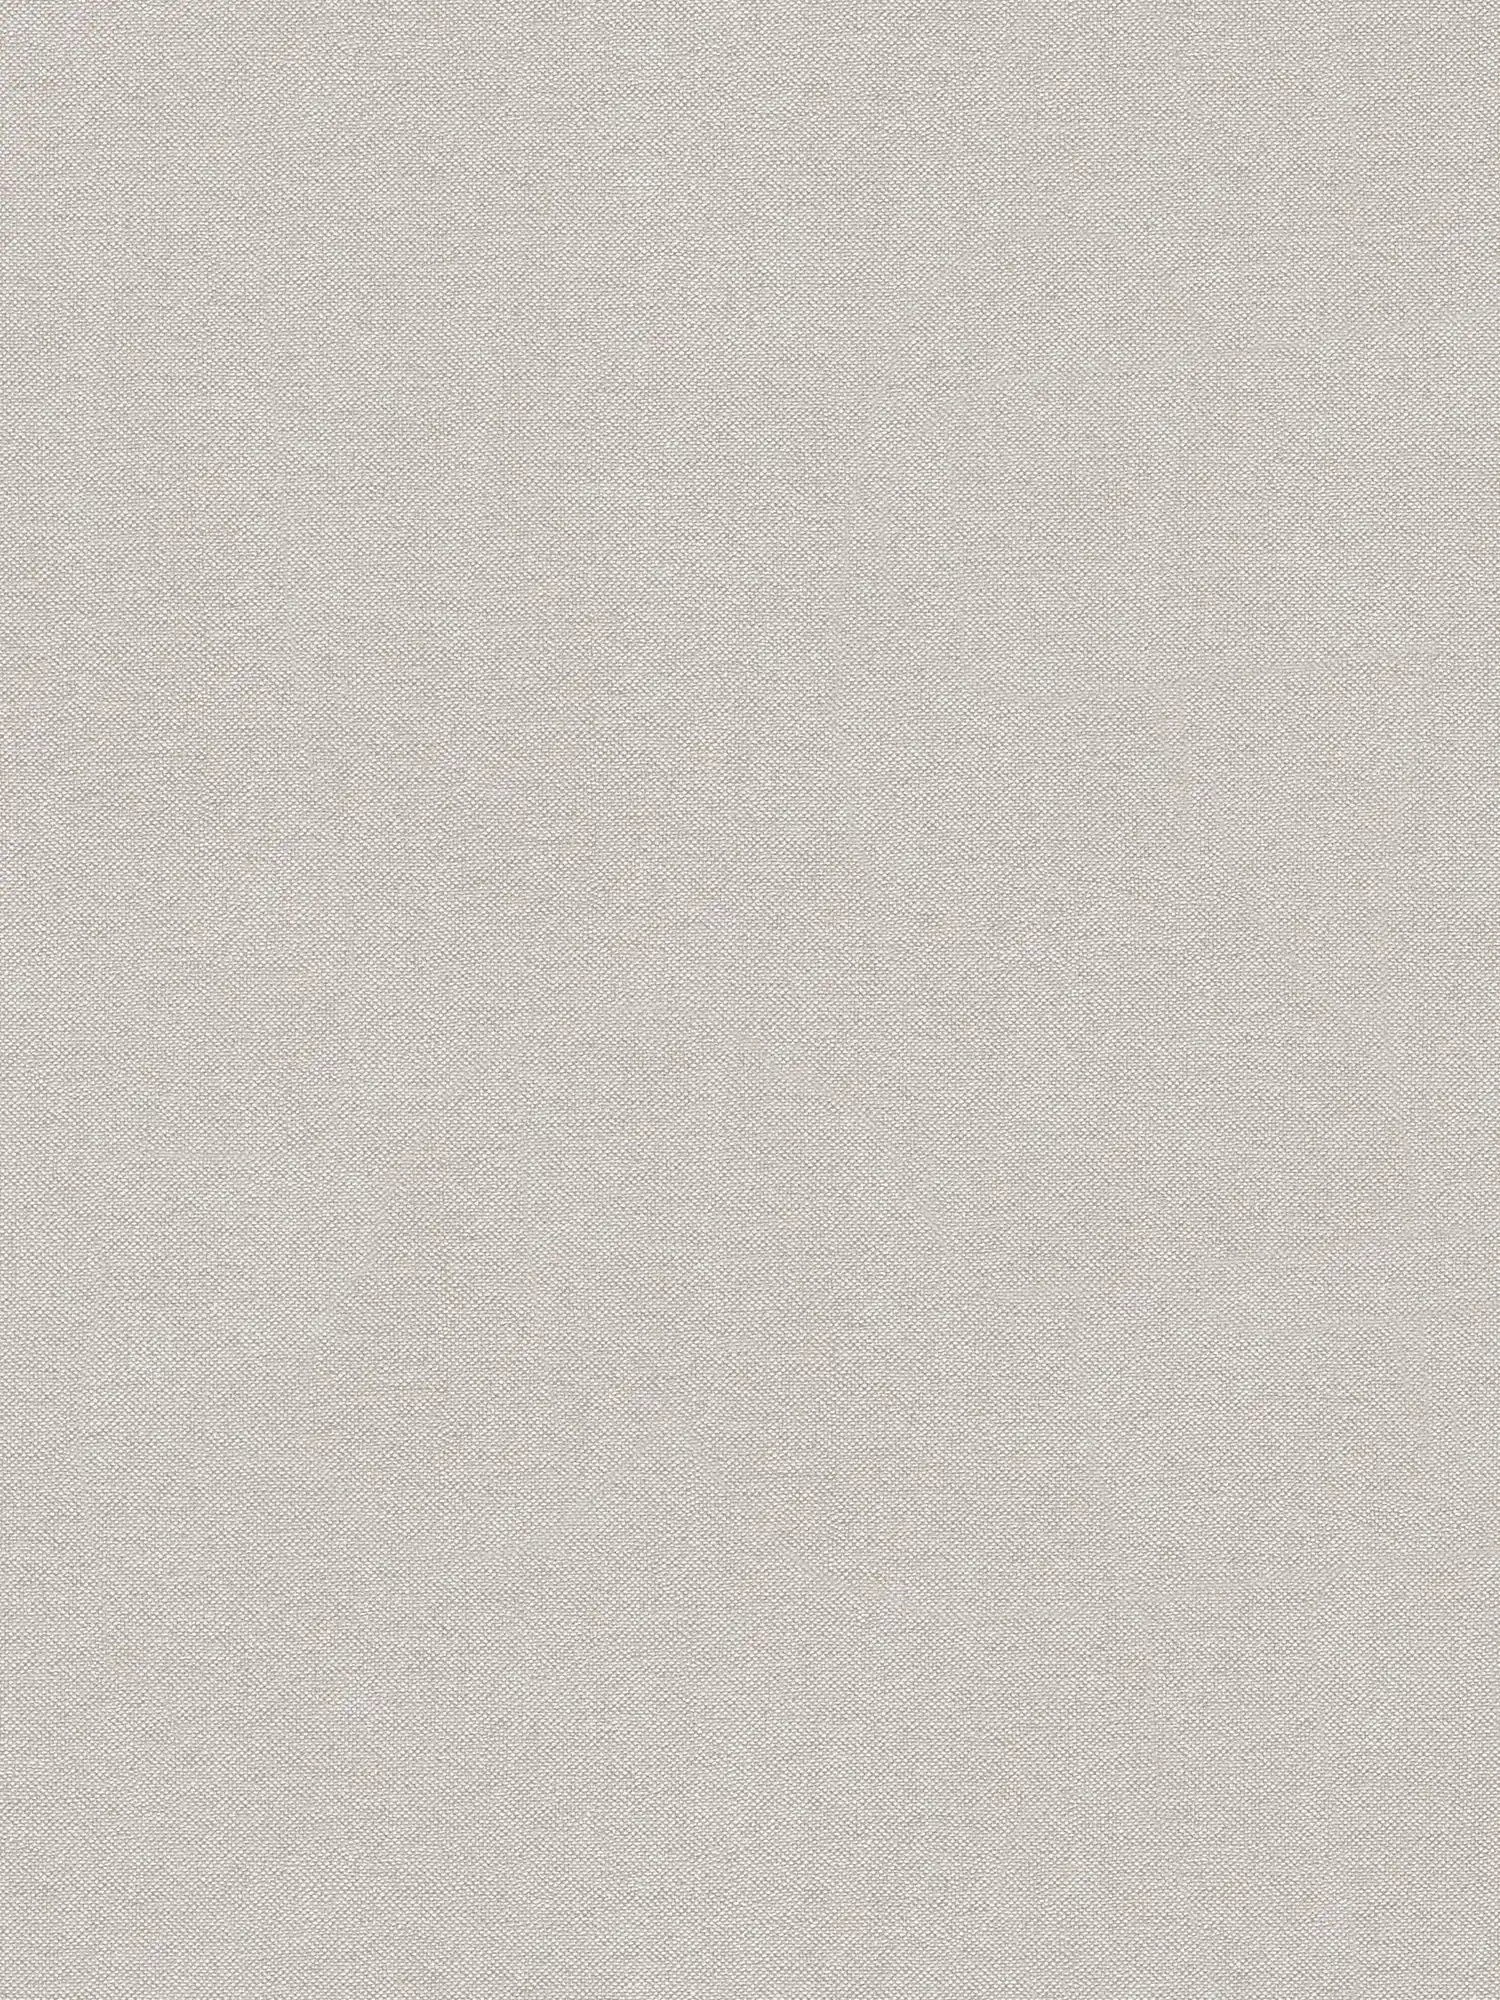 Papel pintado unitario con estructura textil de diseño elegante - beige, marrón
